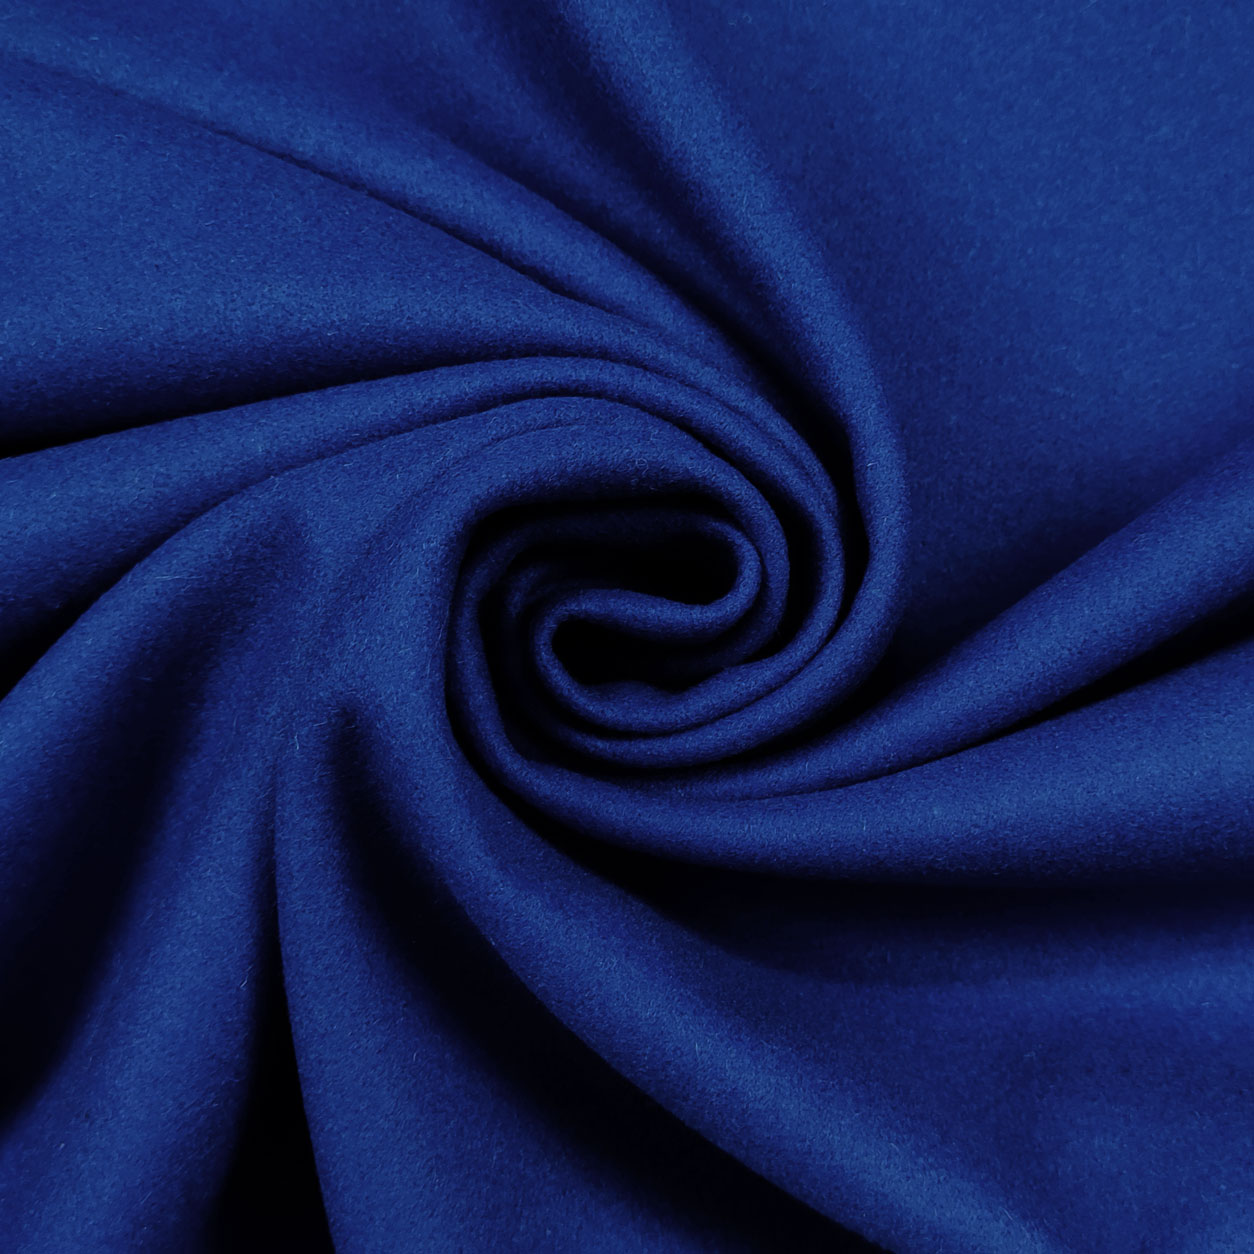 tessuto-cappotto-blu-elettrico